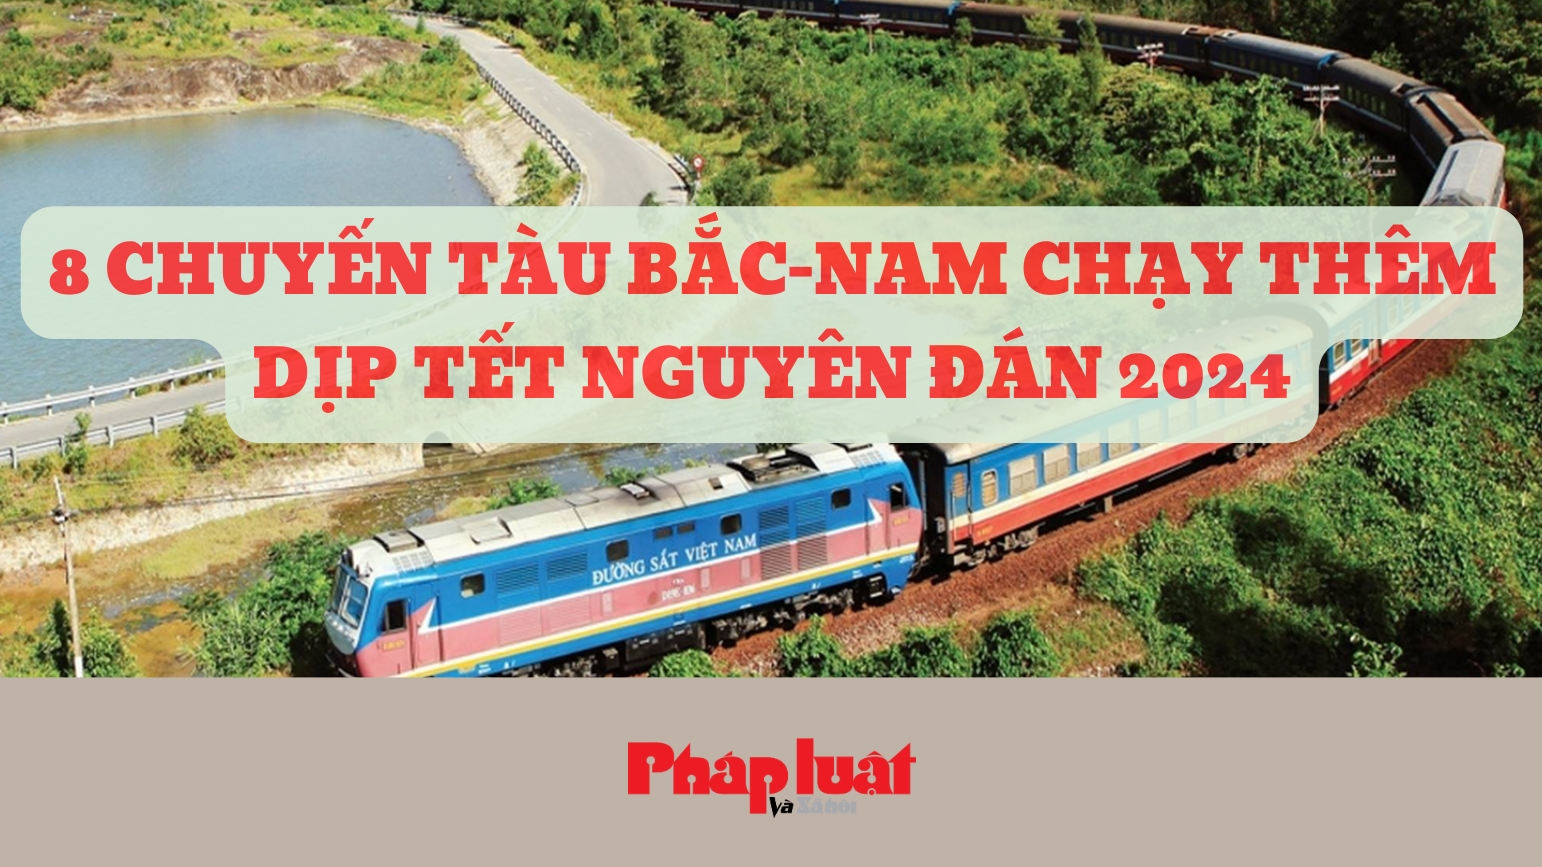 Chi tiết 8 chuyến tàu Bắc - Nam chạy thêm dịp Tết Nguyên đán 2024